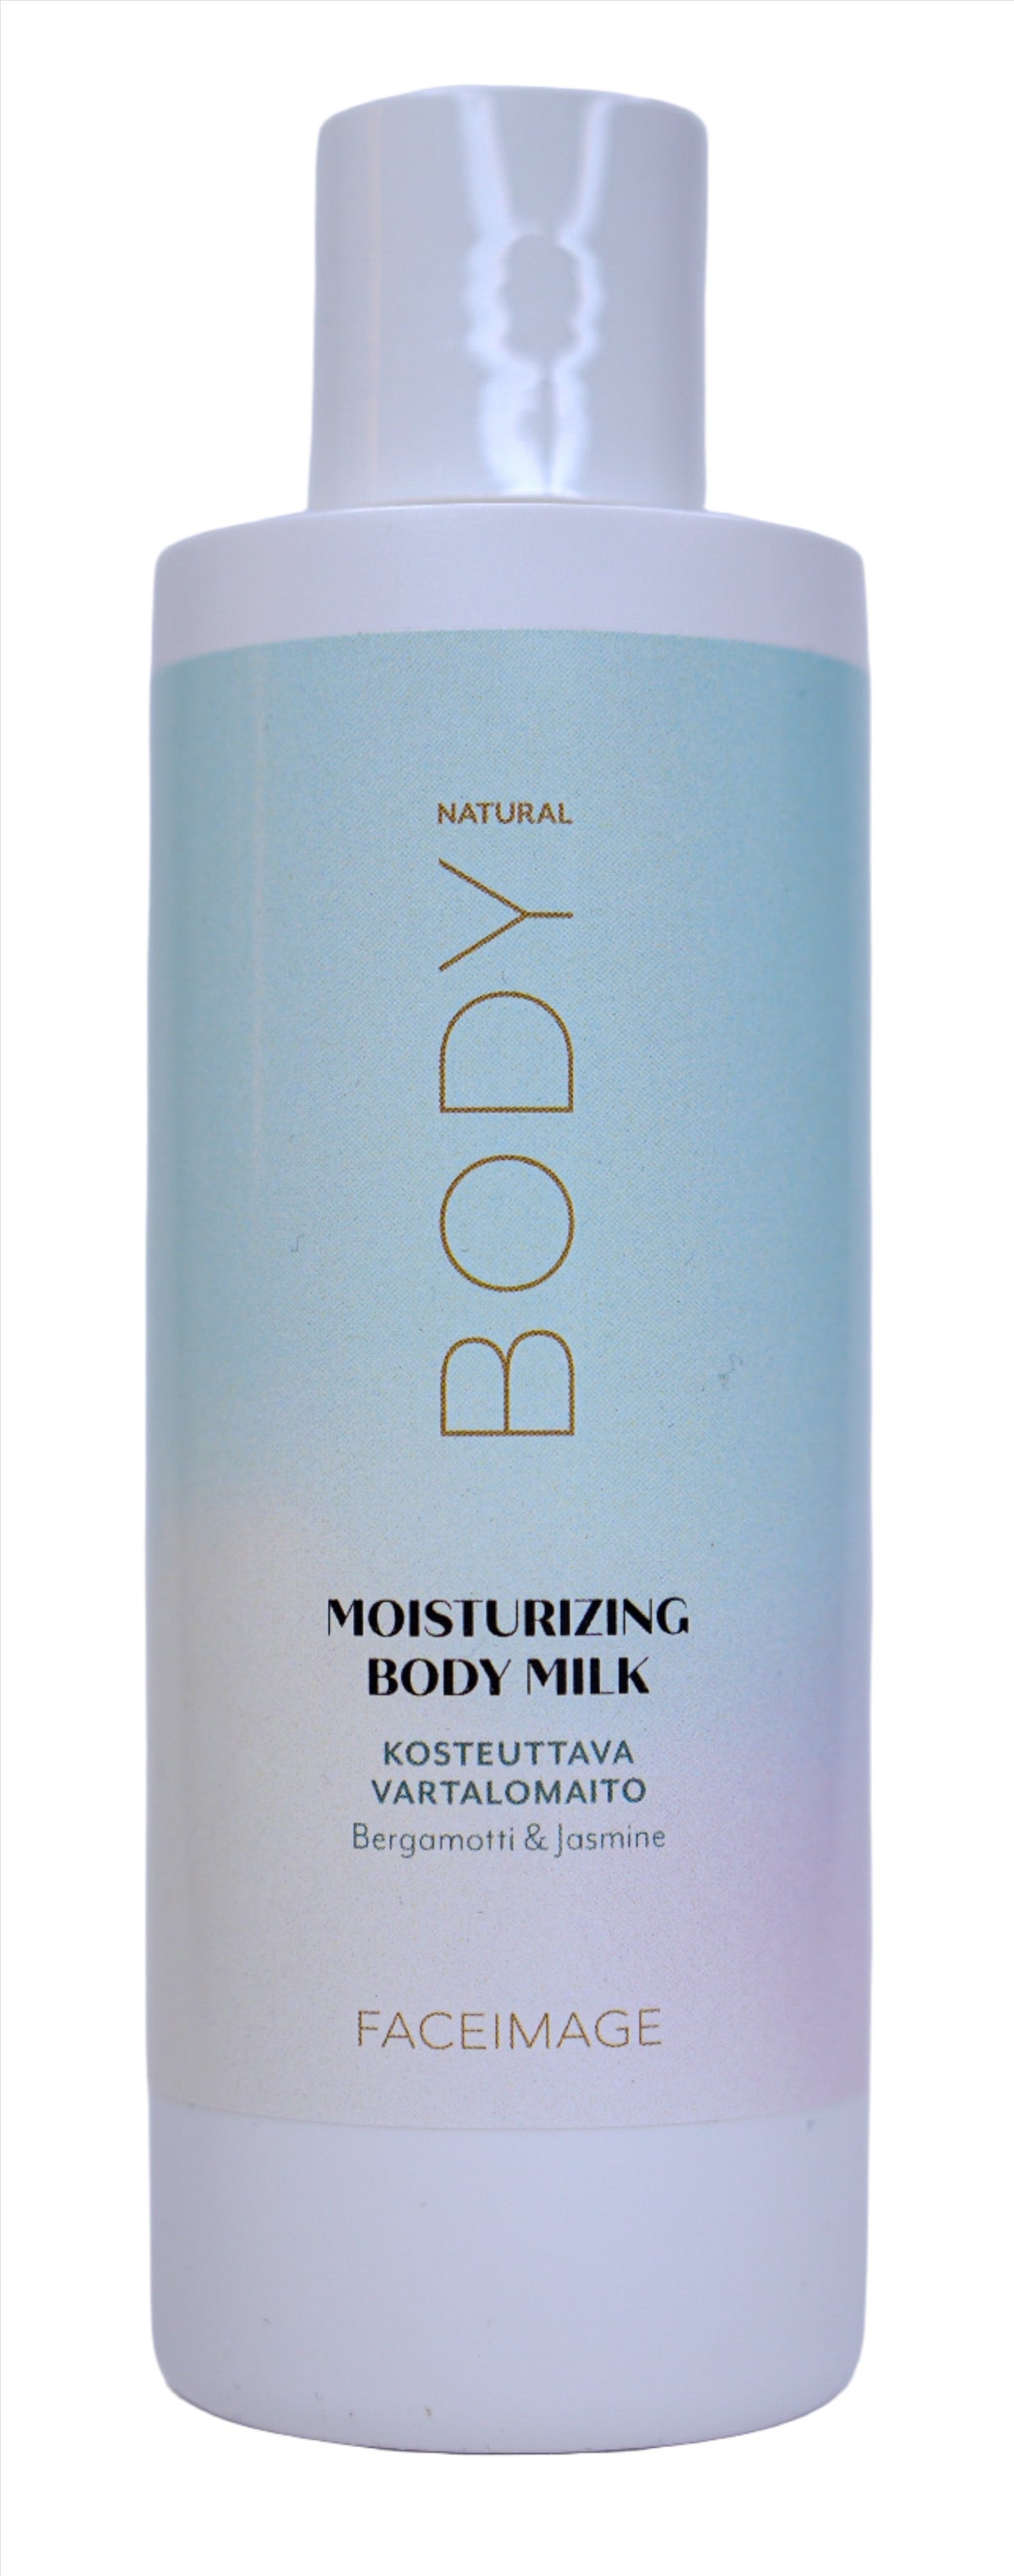 Faceimage Moisturizing Body Milk - Vartalomaito 200 ml